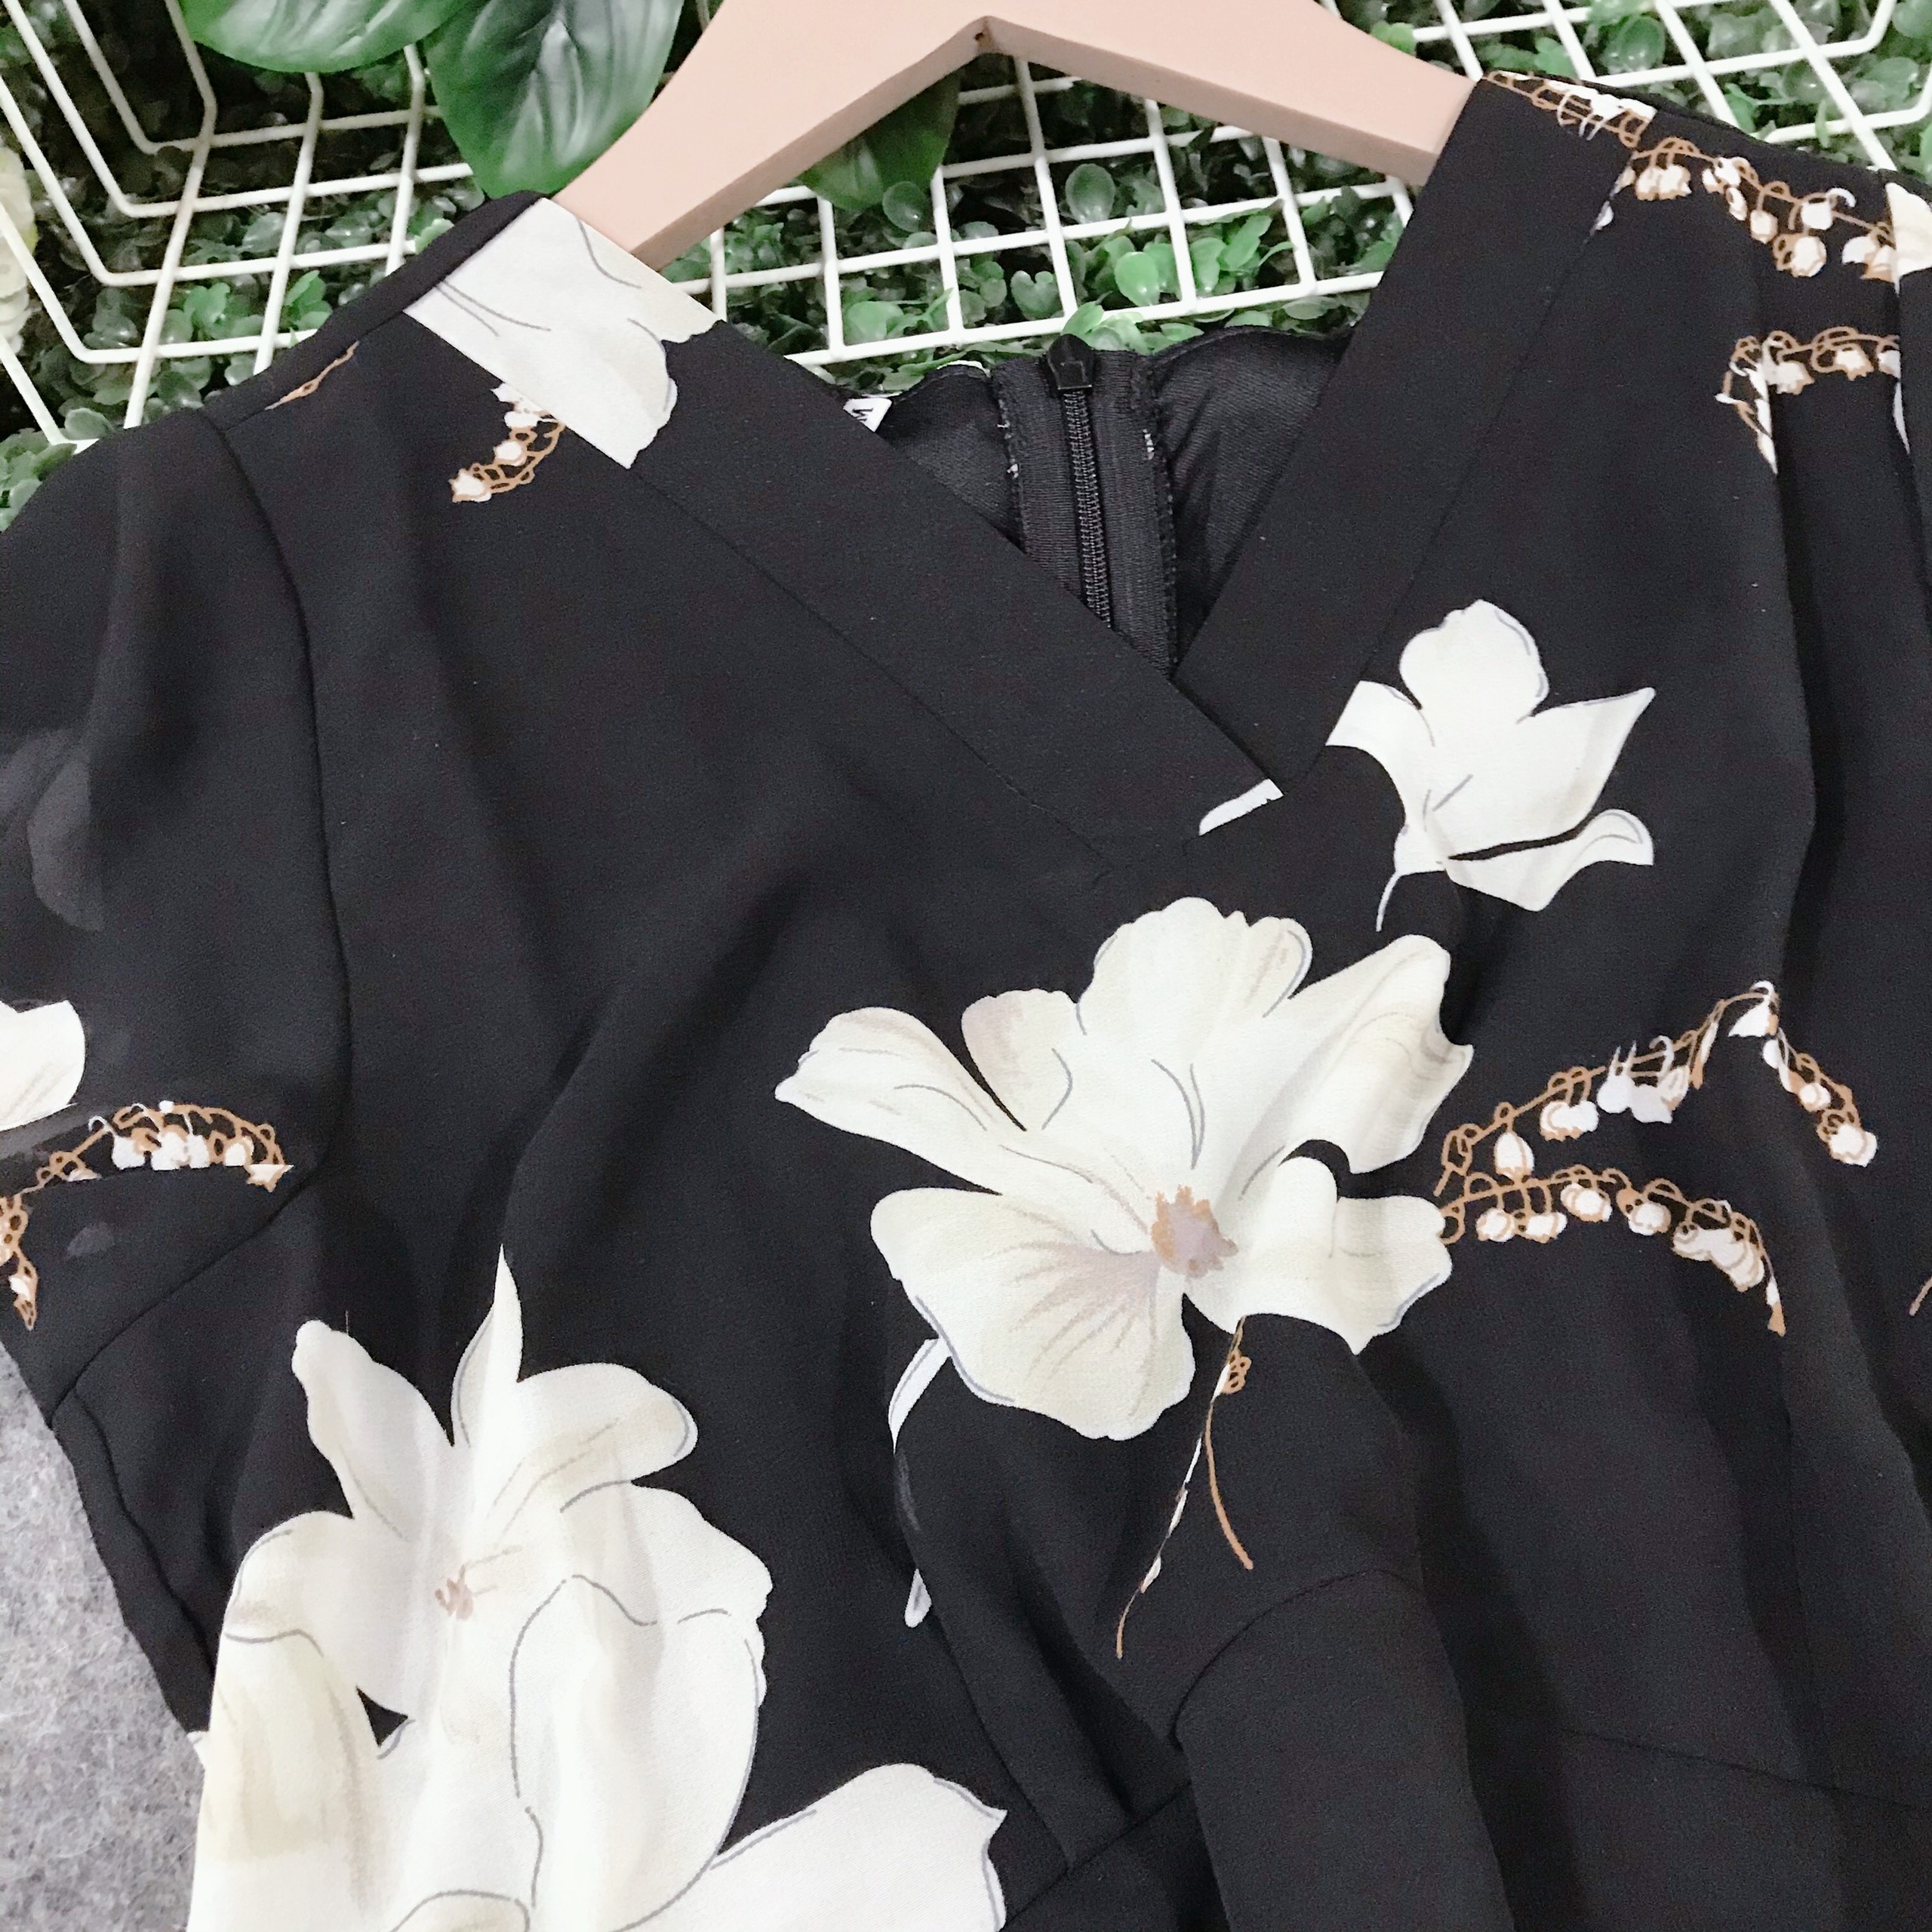 Đầm xòe voan đen hoa trắng duyên dáng thanh lịch - VN471501